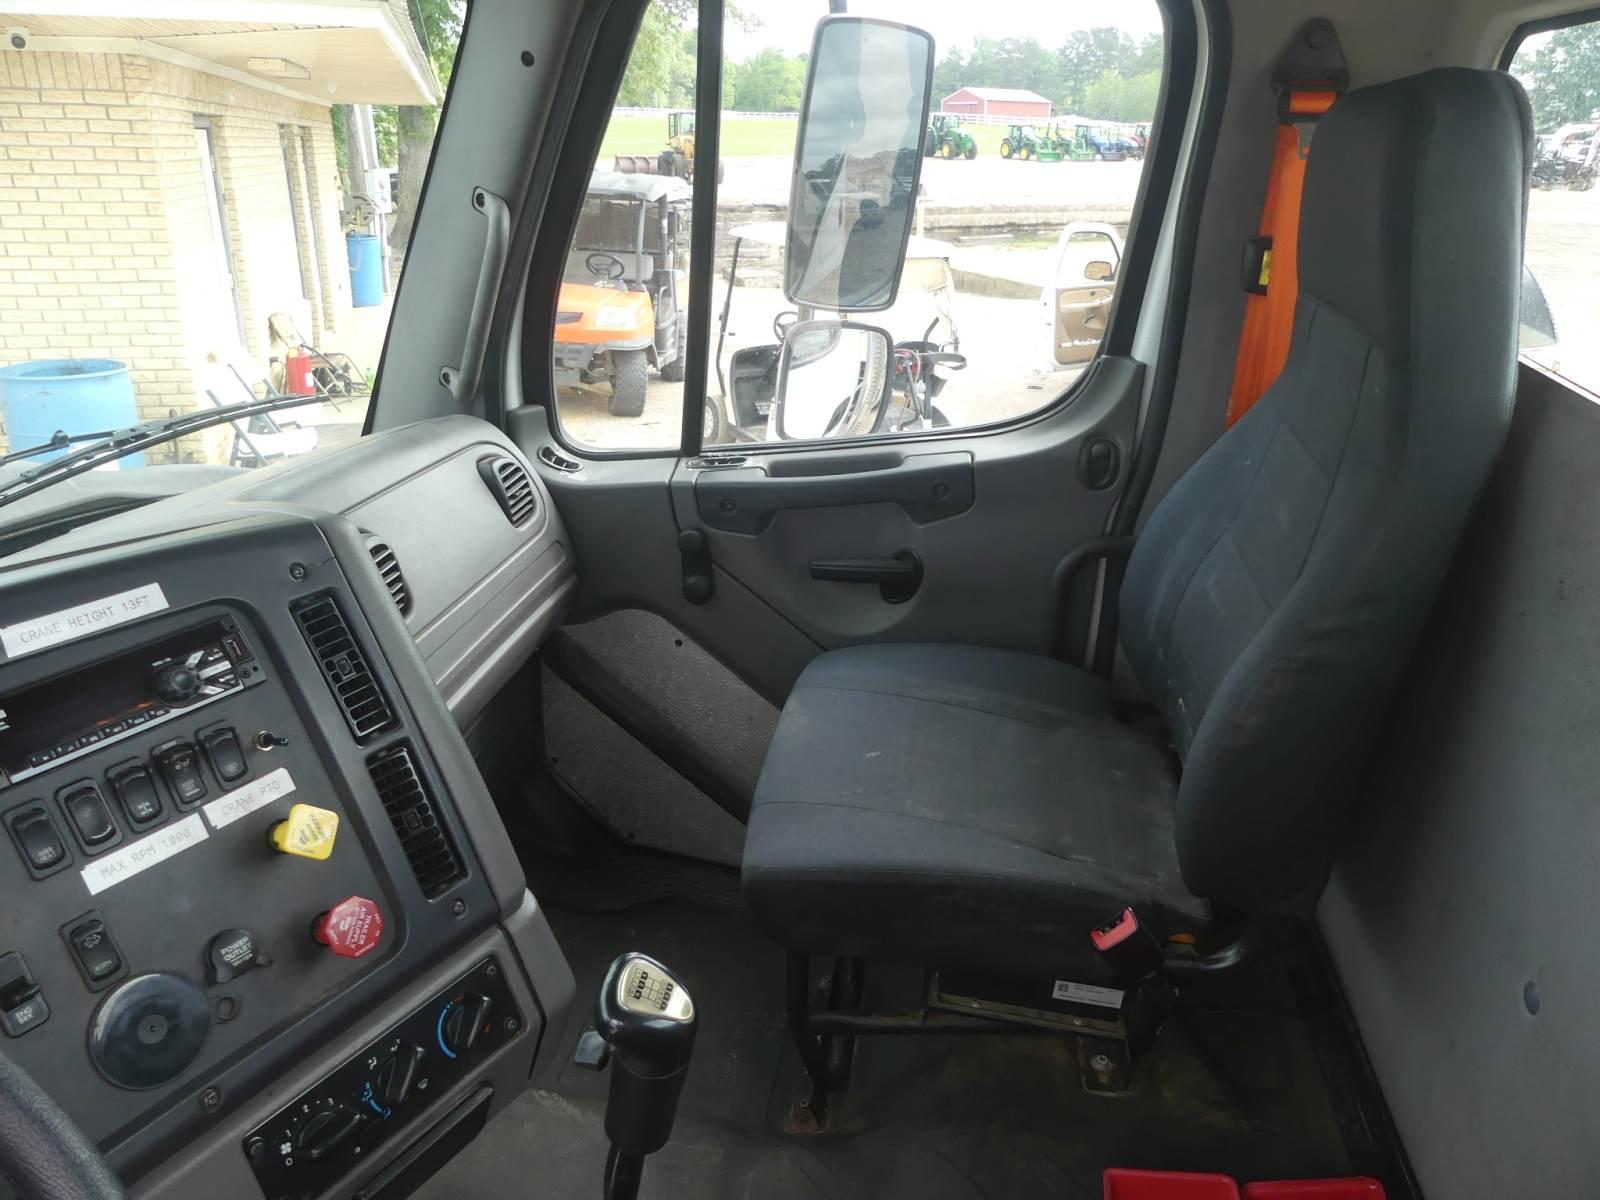 2014 Freightliner 114SD Truck Tractor, s/n 1FUJG3DU4EHFL5781 (Title Delay):